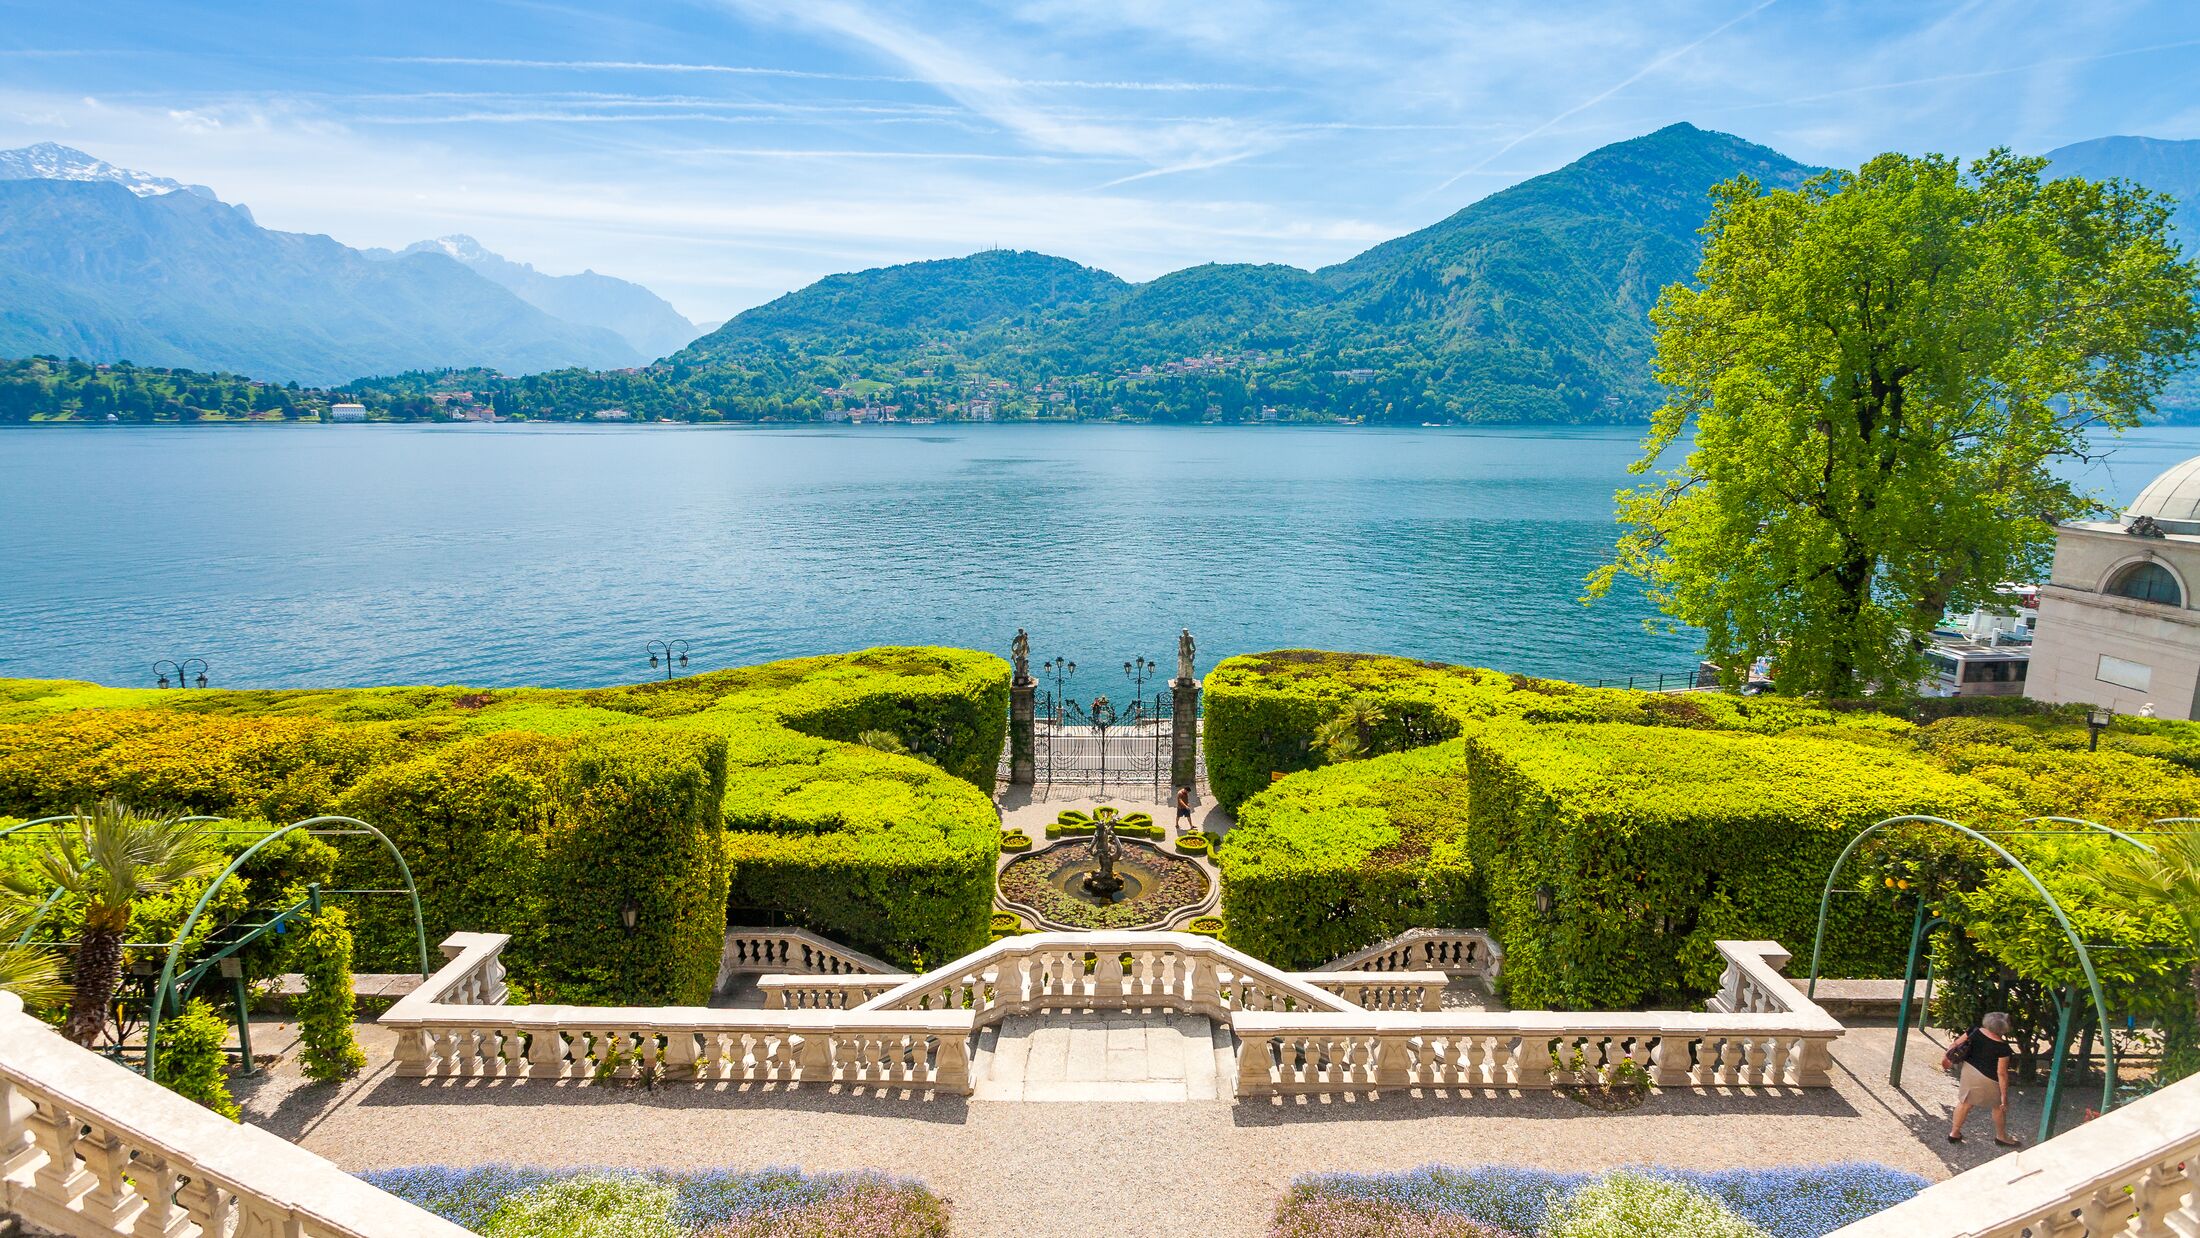 Facade of Villa Carlotta  at Tremezzo on lake Como Italy.